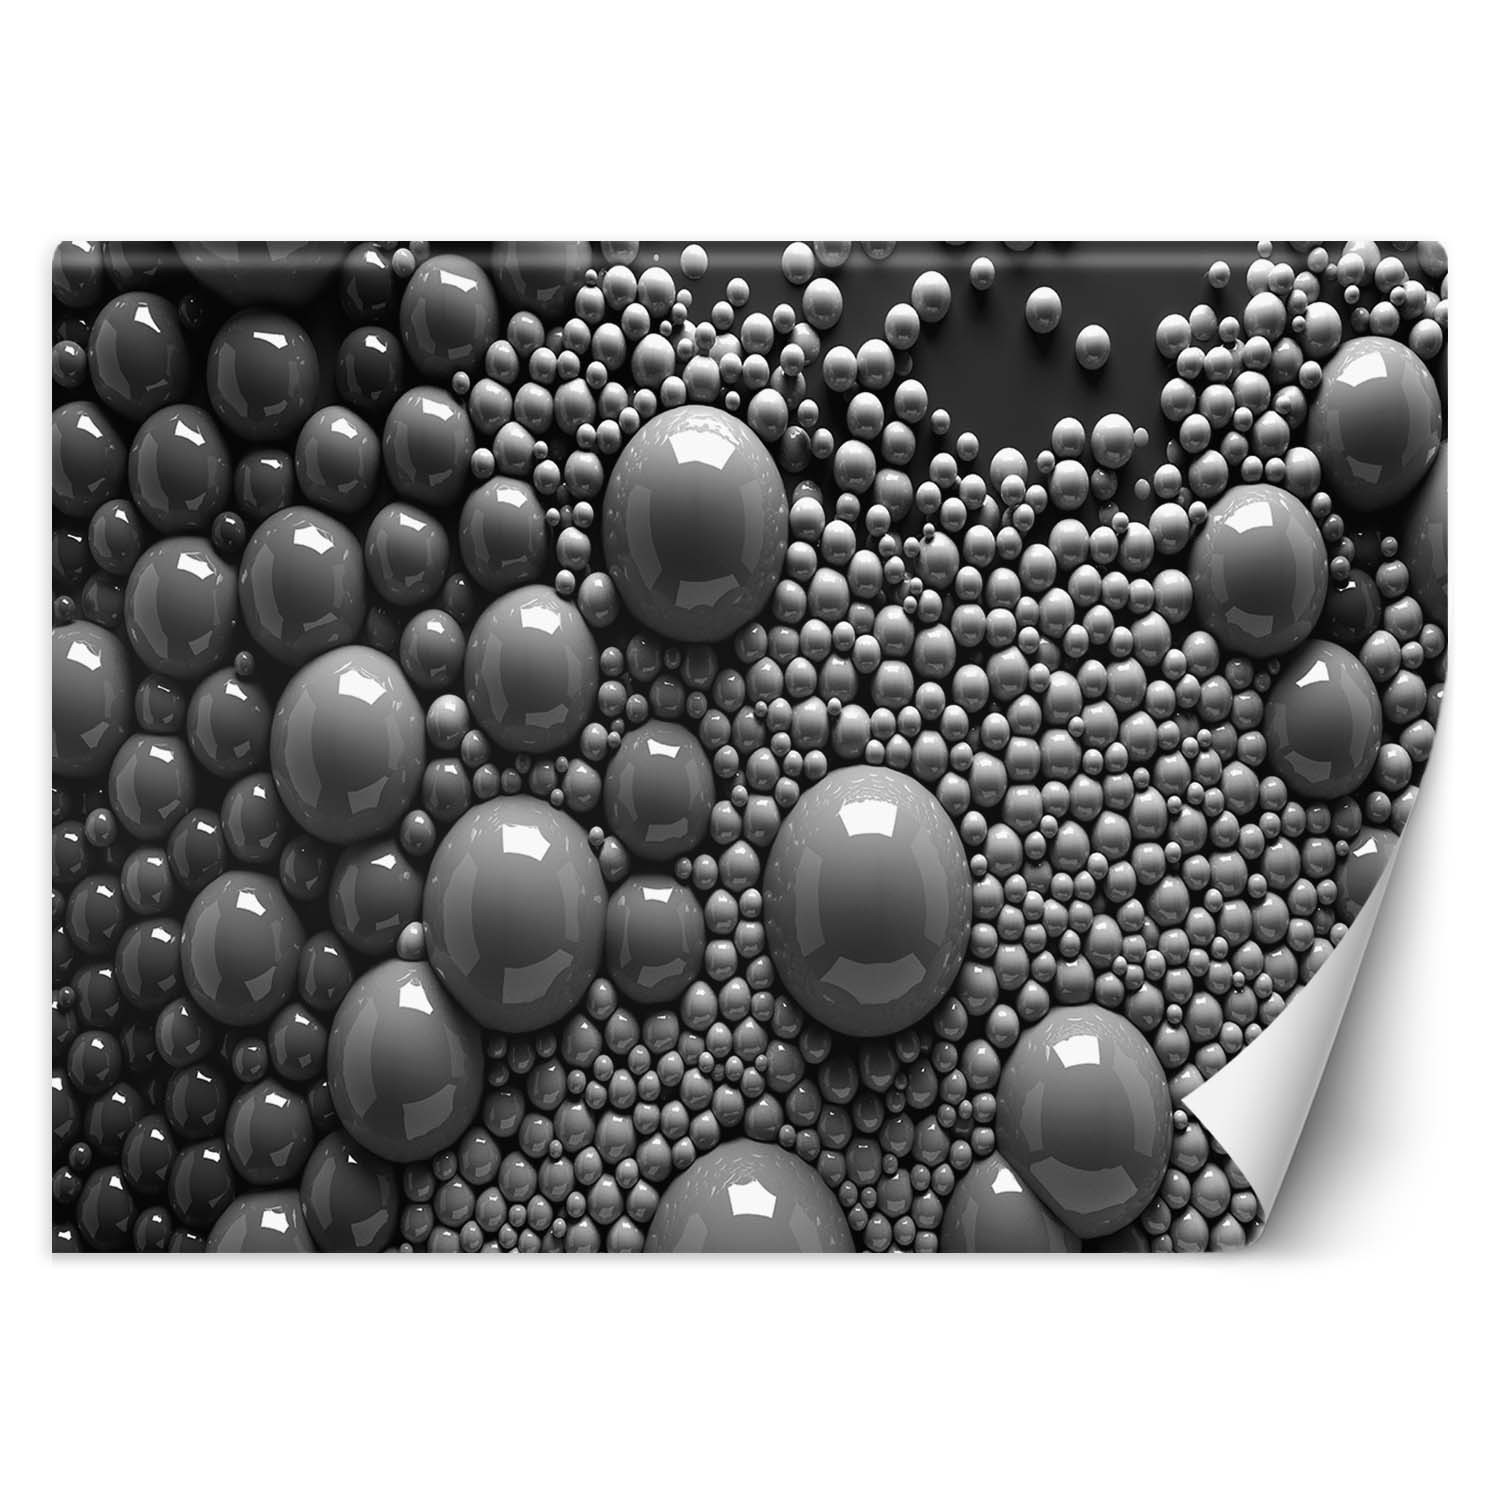 Trend24 – Behang – Abstracte Ballen 3D – Behangpapier – Fotobehang 3D – Behang Woonkamer – 450x315x2 cm – Incl. behanglijm